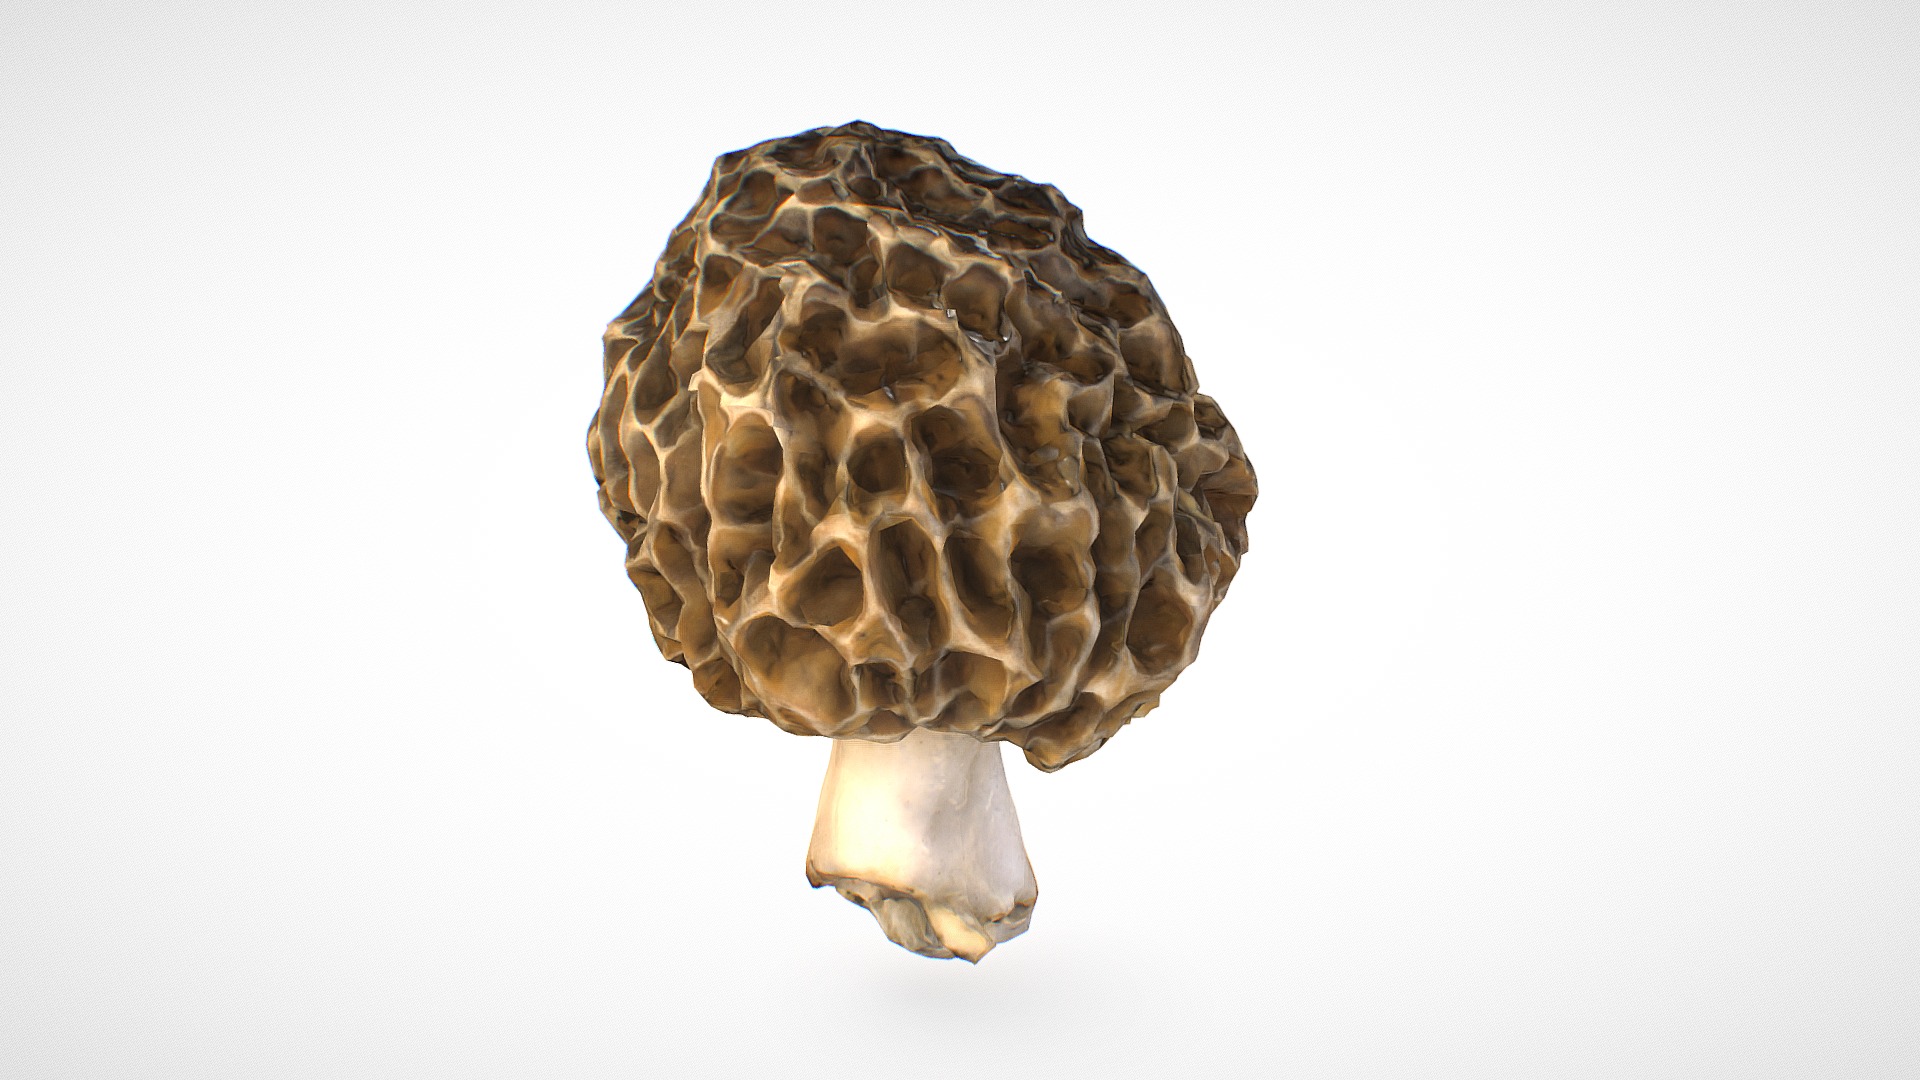 3D model Morchella esculenta mushroom 15 – retopo 8K PBR - This is a 3D model of the Morchella esculenta mushroom 15 - retopo 8K PBR. The 3D model is about a spotted turtle with a white background.